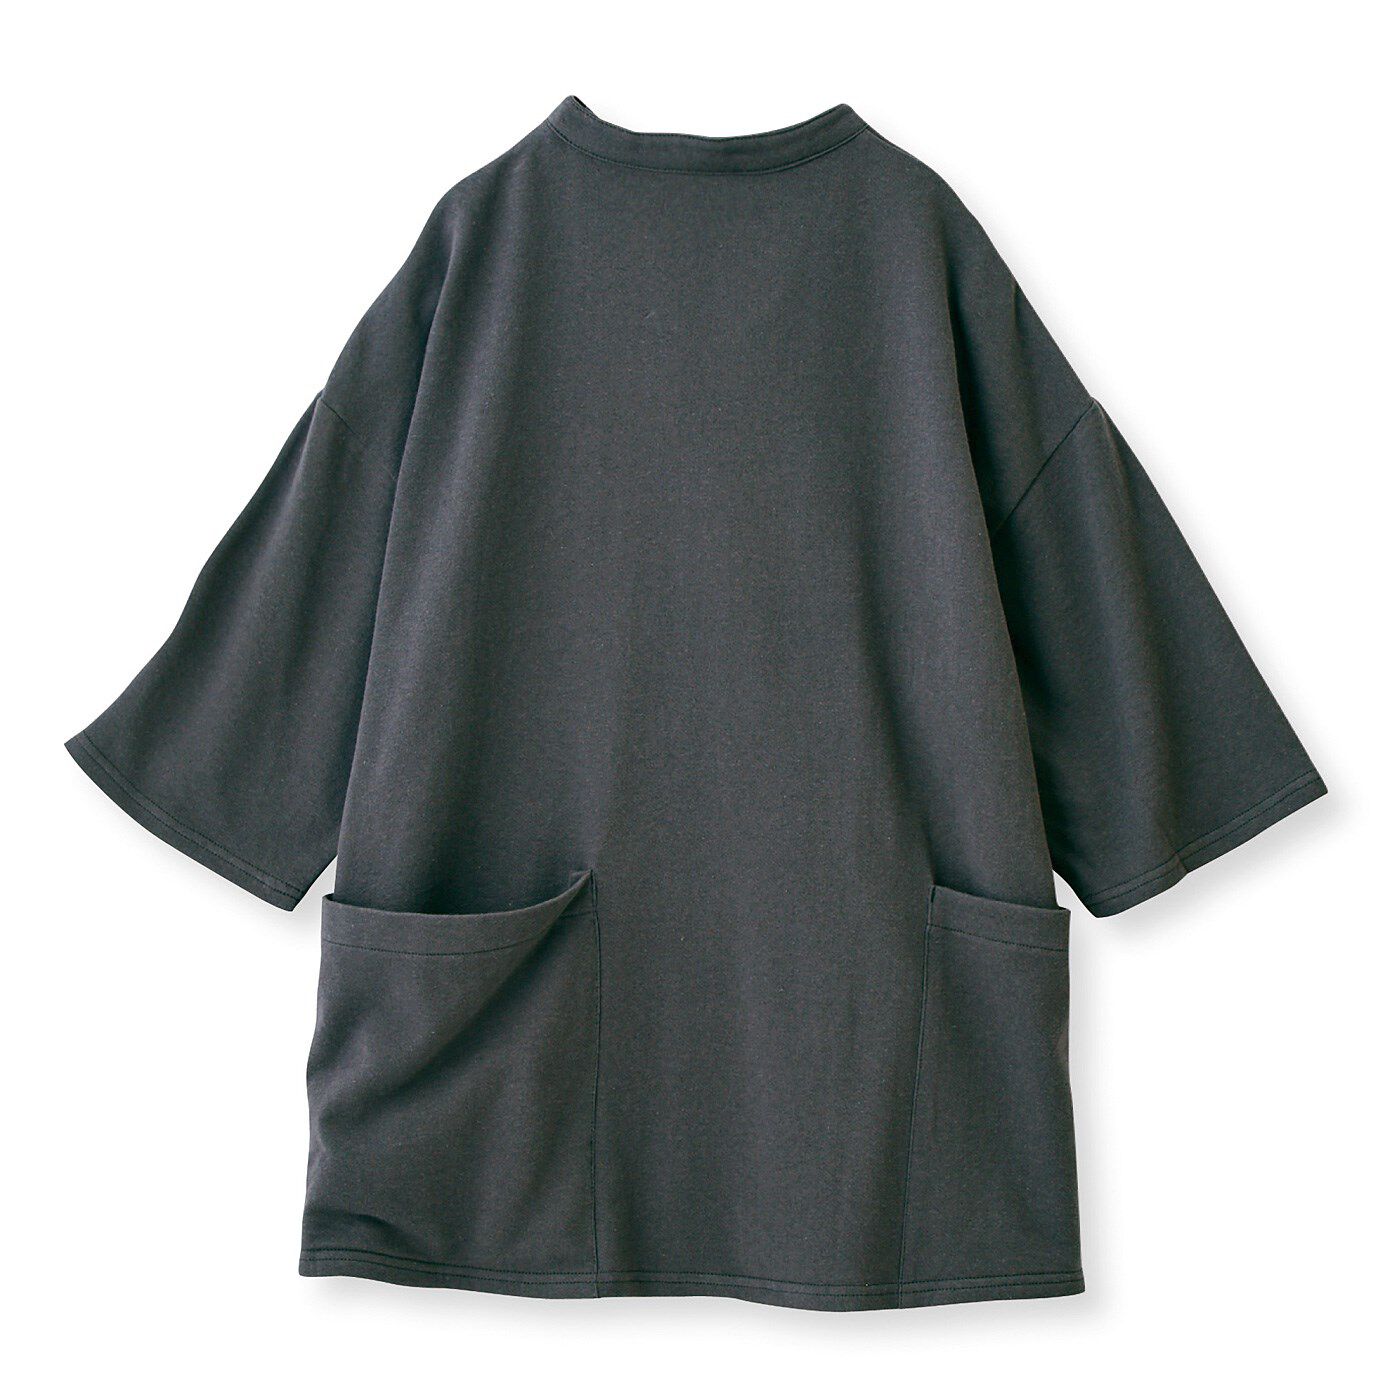 Real Stock|UP.de　着られるバッグ Tシャツ感覚なのにきれい見えする ポケットいっぱい てぶらなカットソースキッパーシャツ〈チャコールグレー〉|〈BACK〉